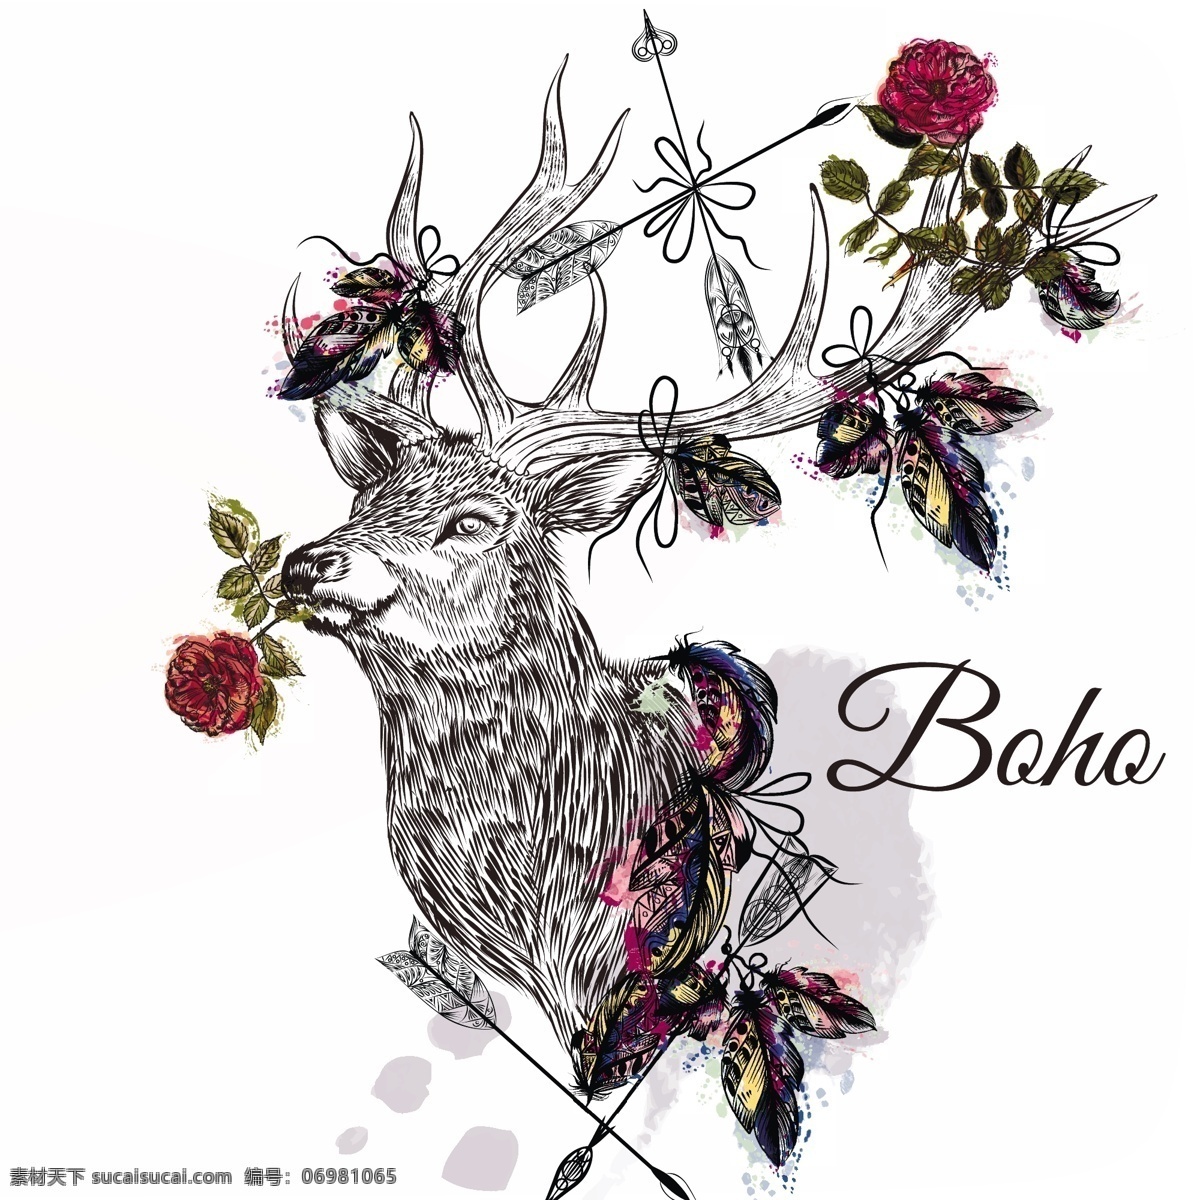 波西 米亚 背景 花卉 抽象的设计 一方面 花的背景 动物 手绘 饰品 壁纸 鹿 羽毛 装饰 印度 绘画 民族 波希米亚